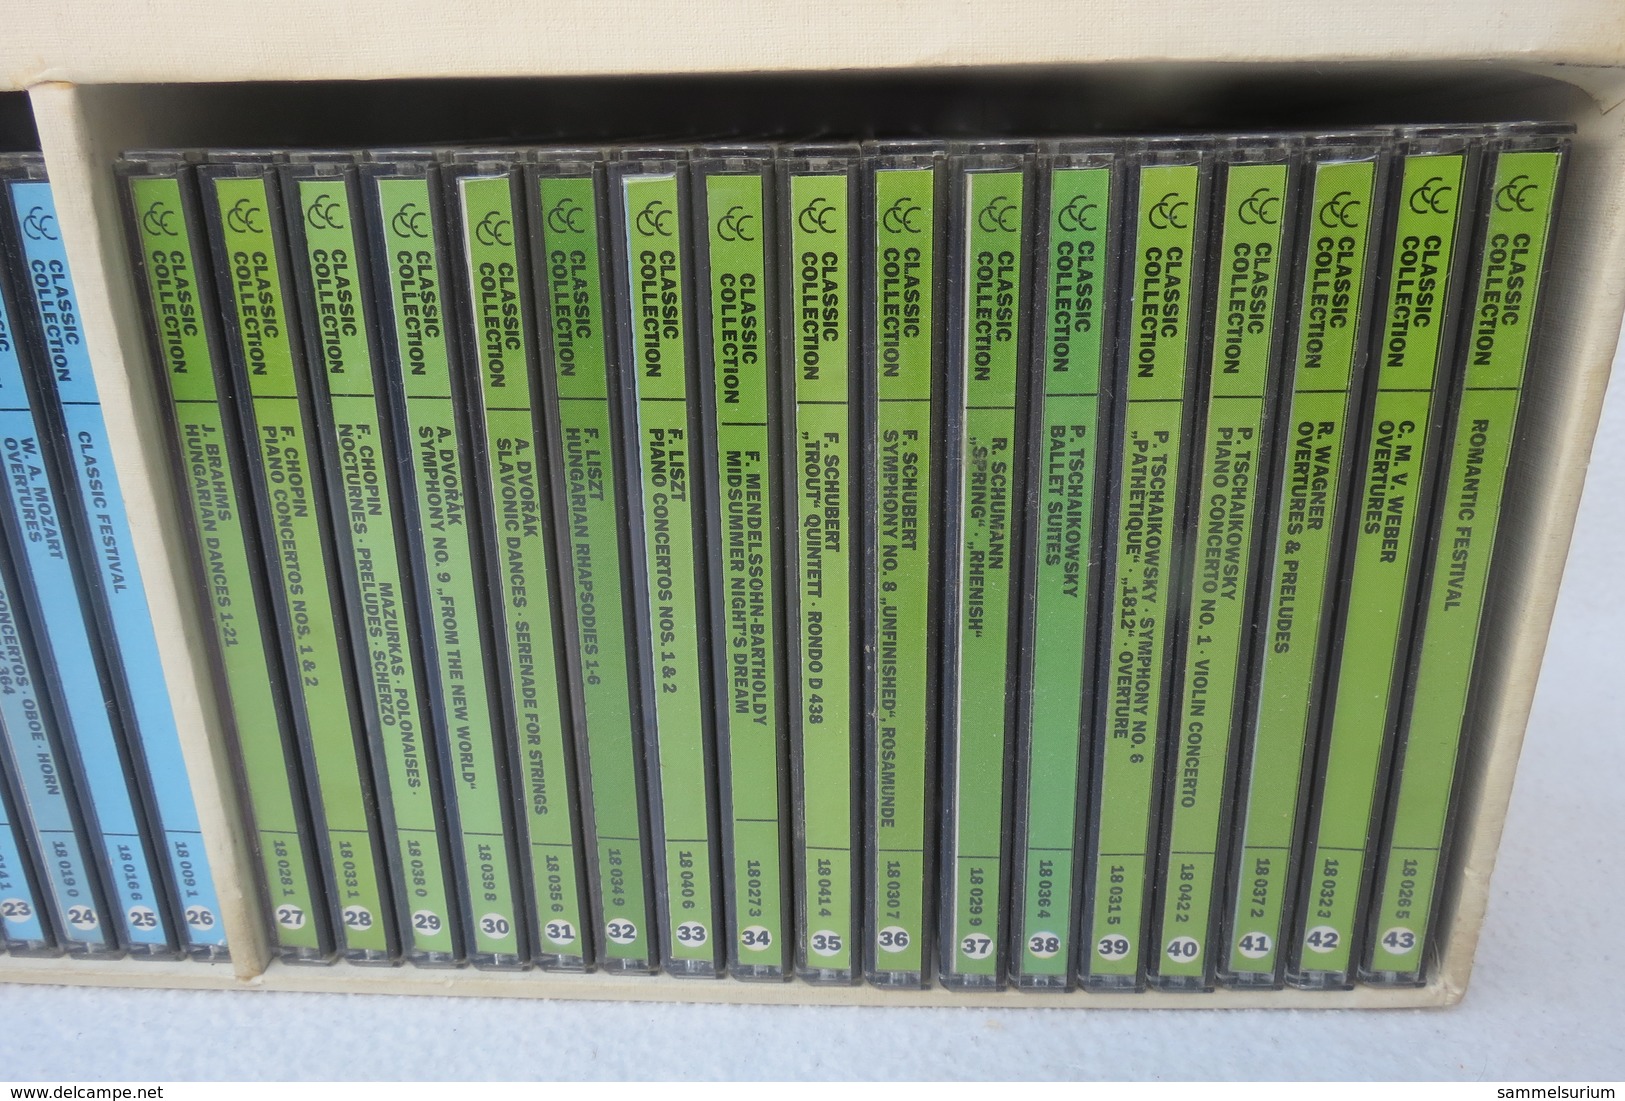 43 CDs "CCC Classic Collection" - Klassik